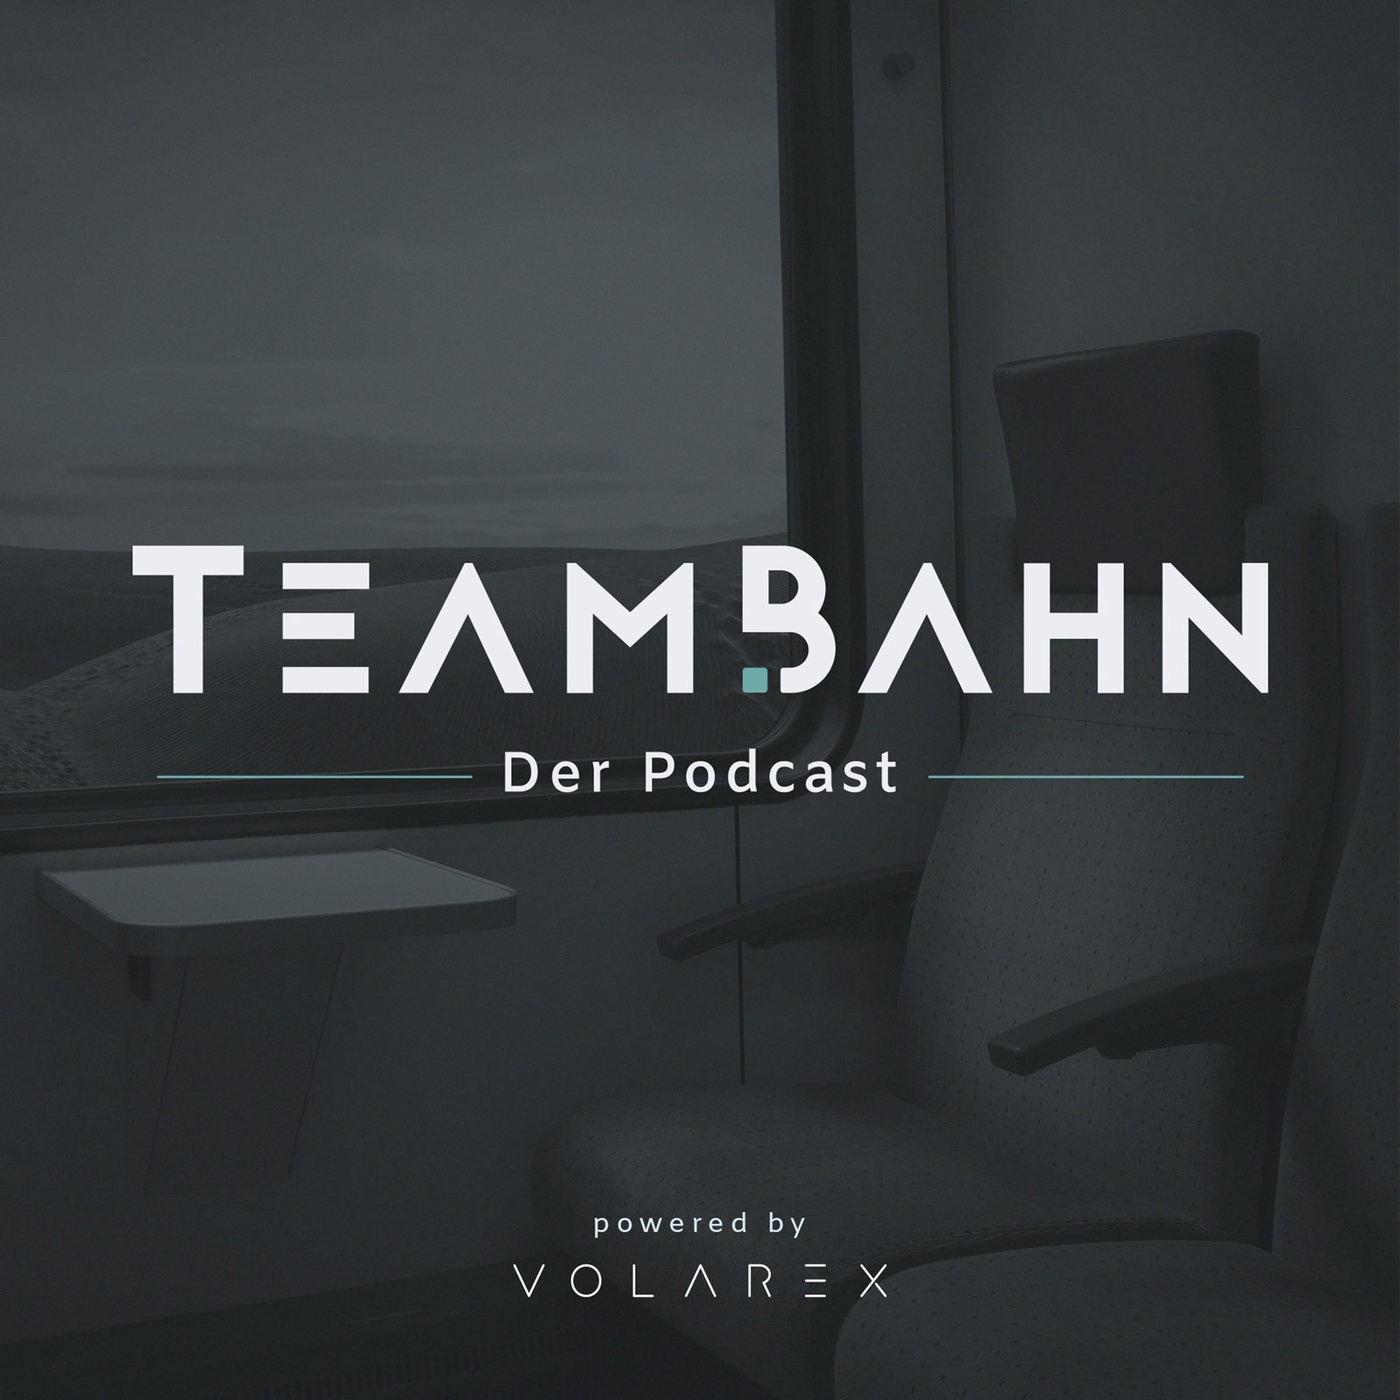 TeamBahn - Der Podcast